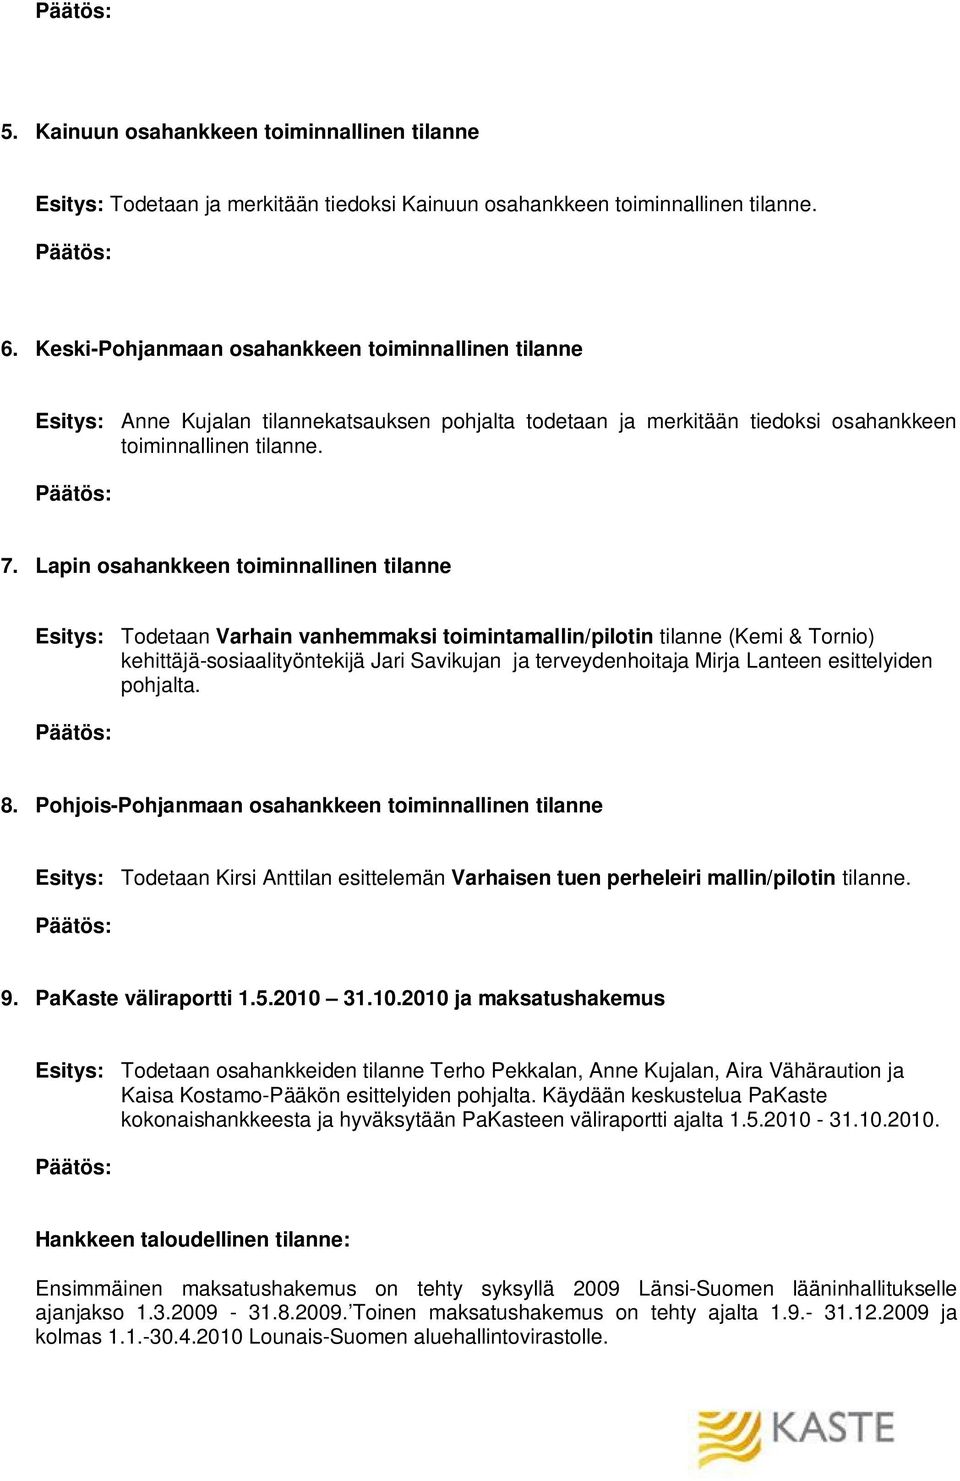 Lapin osahankkeen toiminnallinen tilanne Esitys: Todetaan Varhain vanhemmaksi toimintamallin/pilotin tilanne (Kemi & Tornio) kehittäjä-sosiaalityöntekijä Jari Savikujan ja terveydenhoitaja Mirja